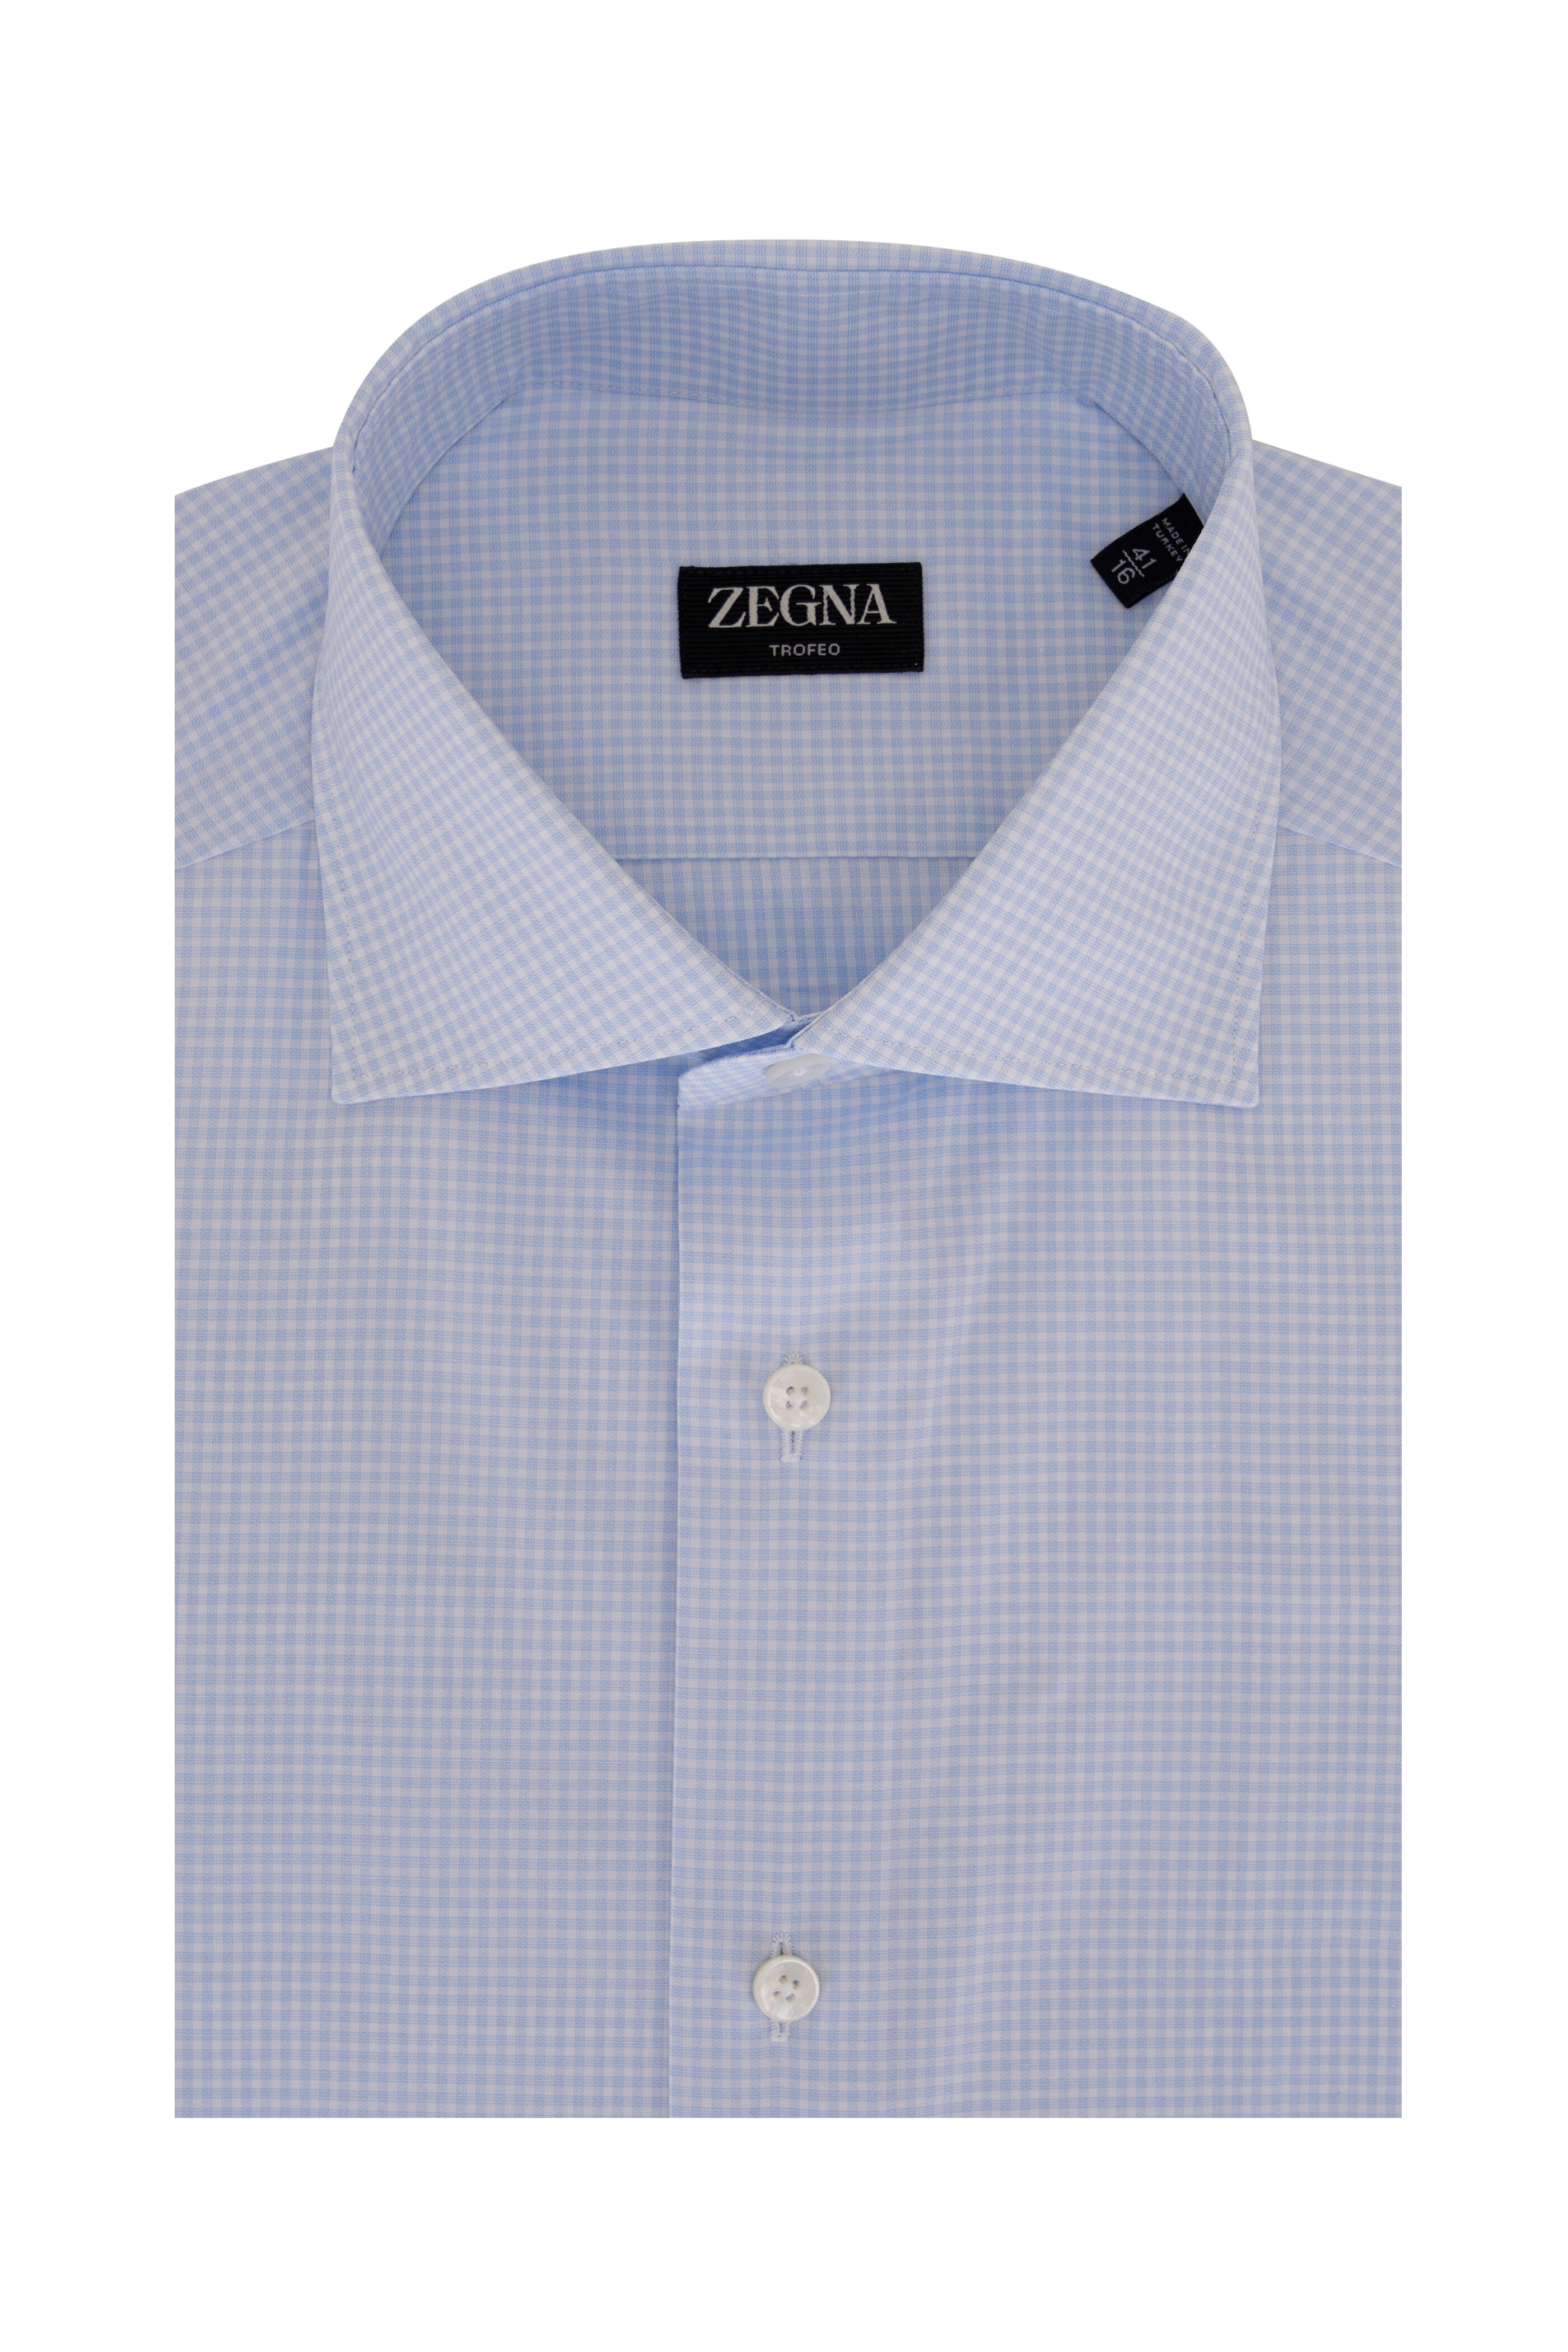 Zegna - Light Blue Check Dress Shirt | Mitchell Stores